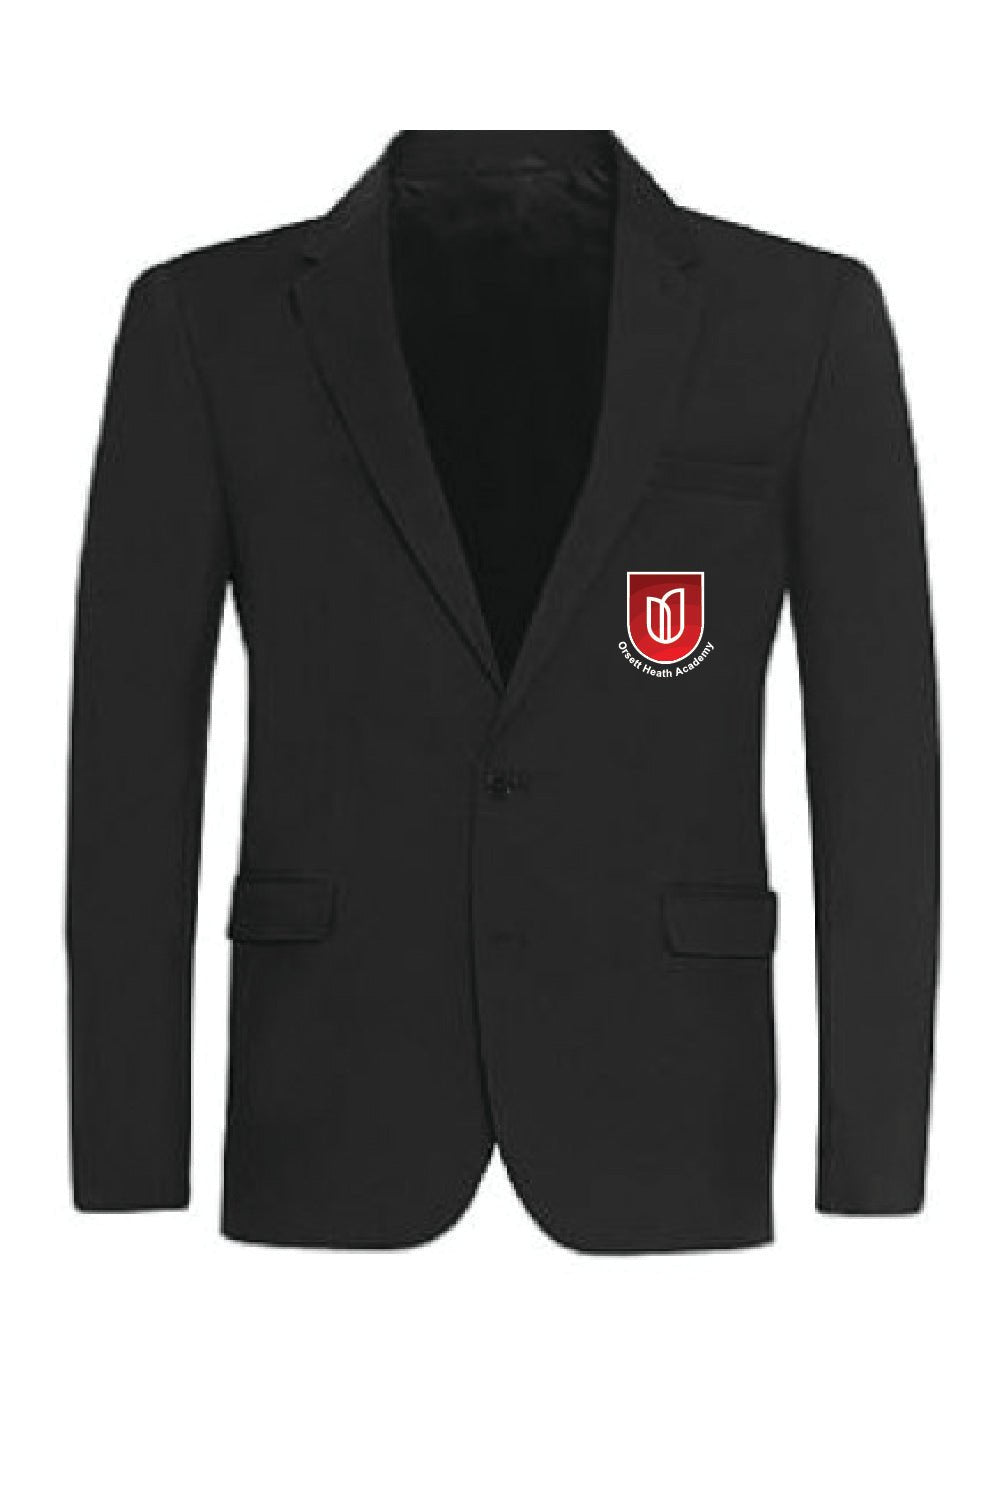 Orsett Heath Academy Boys School Blazer - Uniformwise Schoolwear